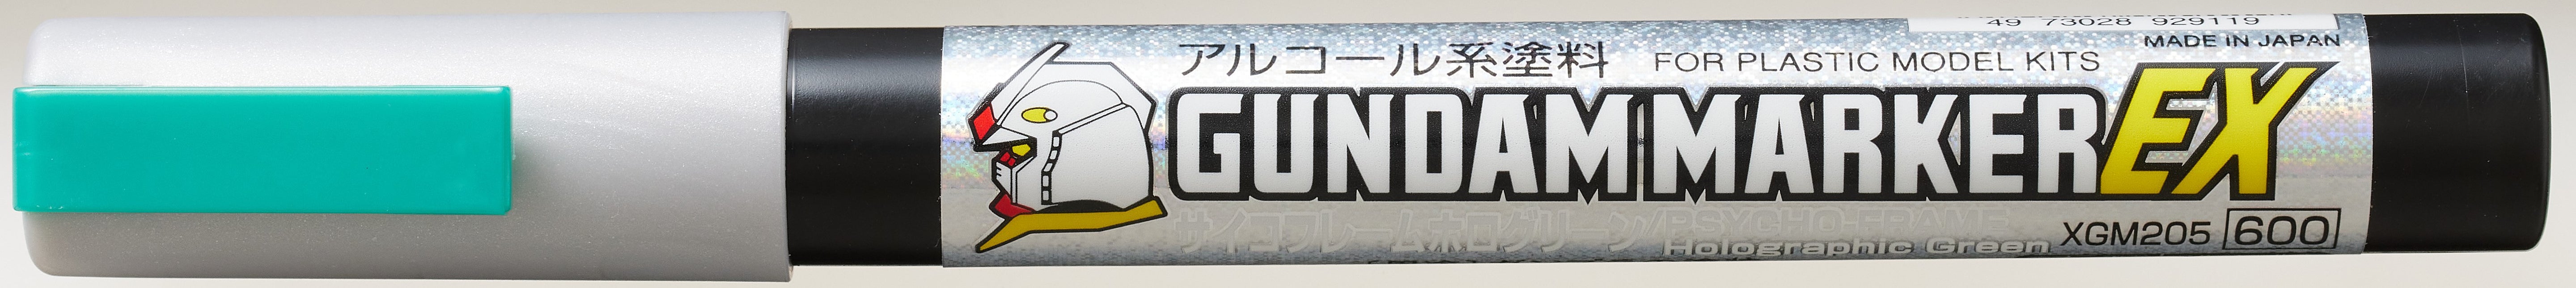 GSI Creos Gundam Marker EX Psycho Frame Holo Green - BanzaiHobby